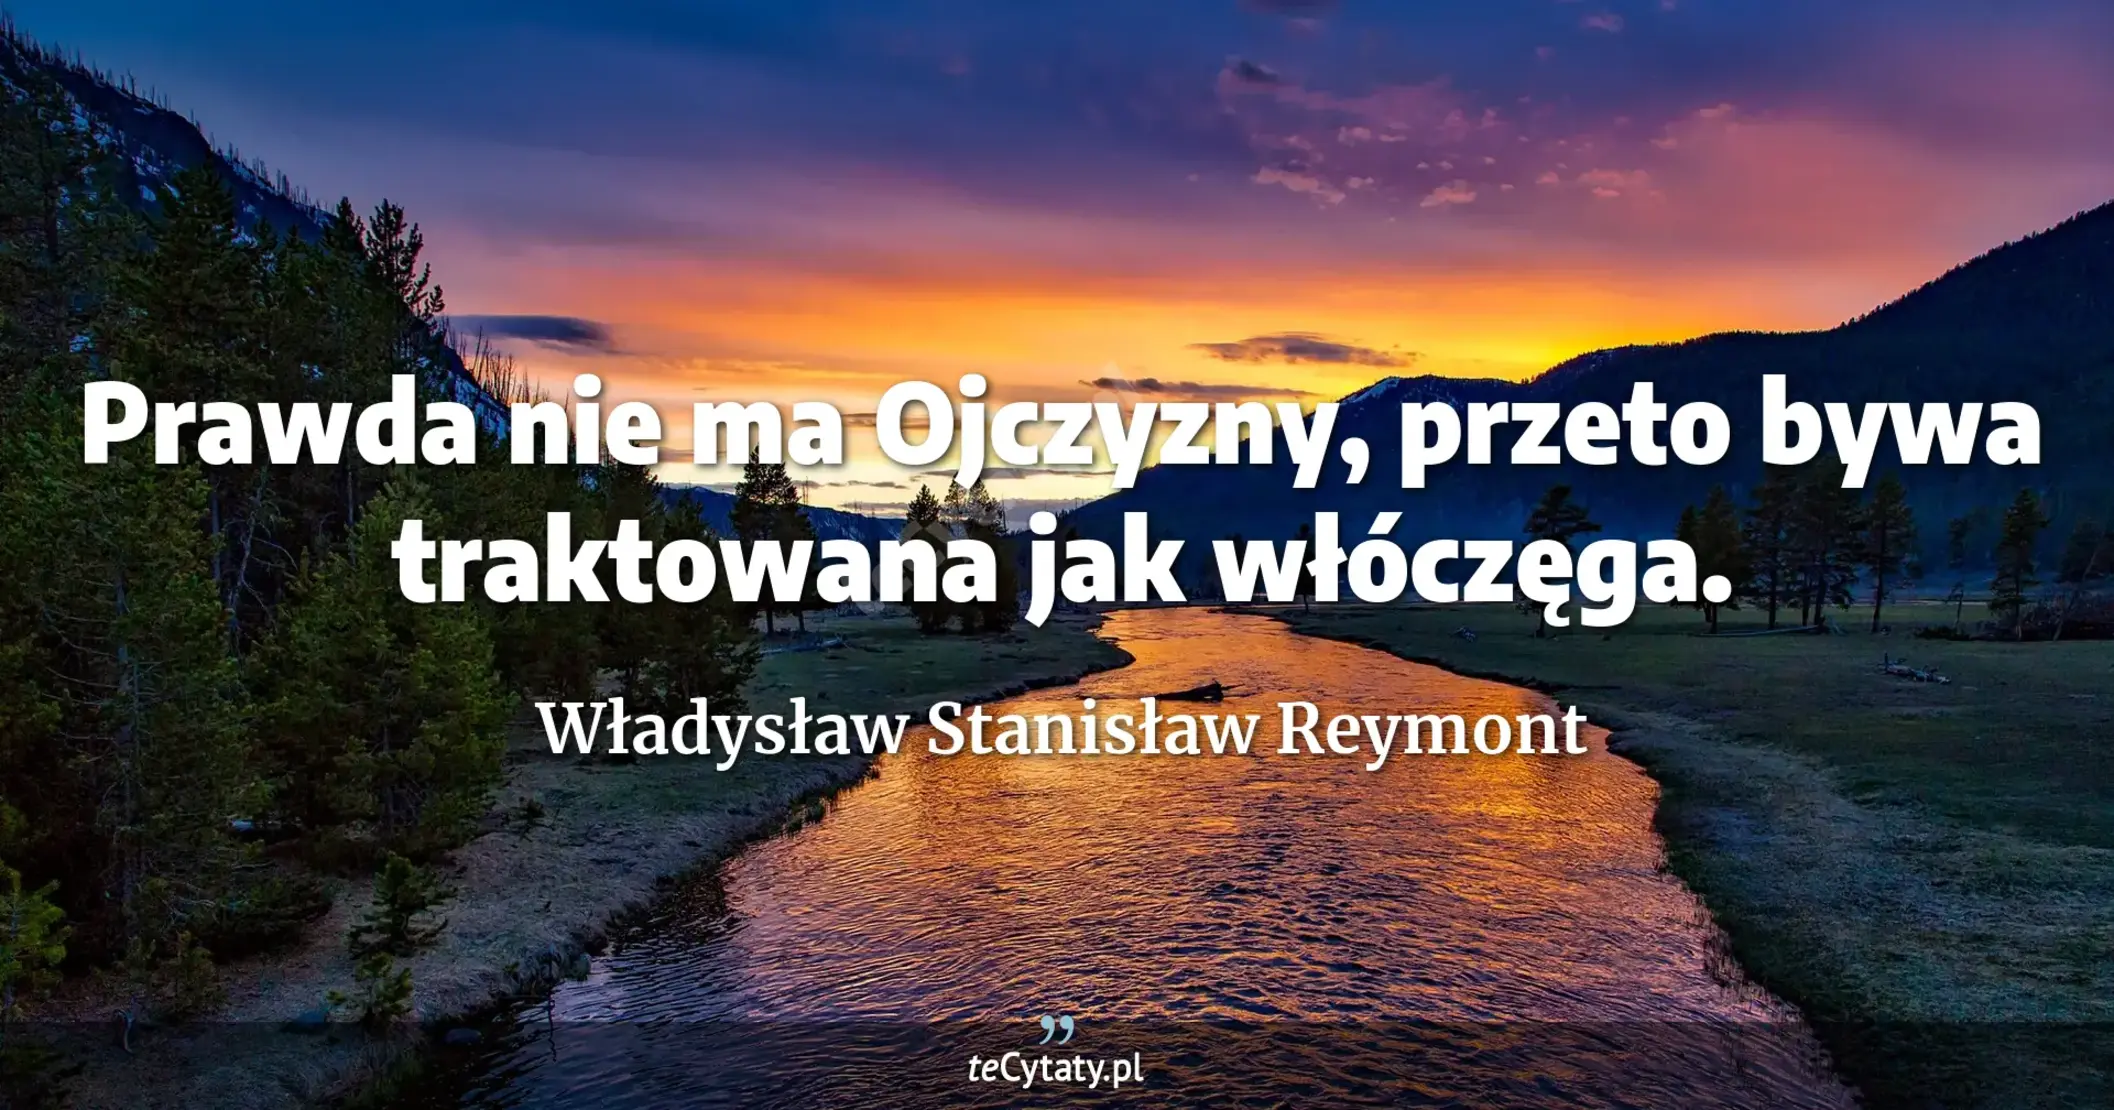 Prawda nie ma Ojczyzny, przeto bywa traktowana jak włóczęga. - Władysław Stanisław Reymont